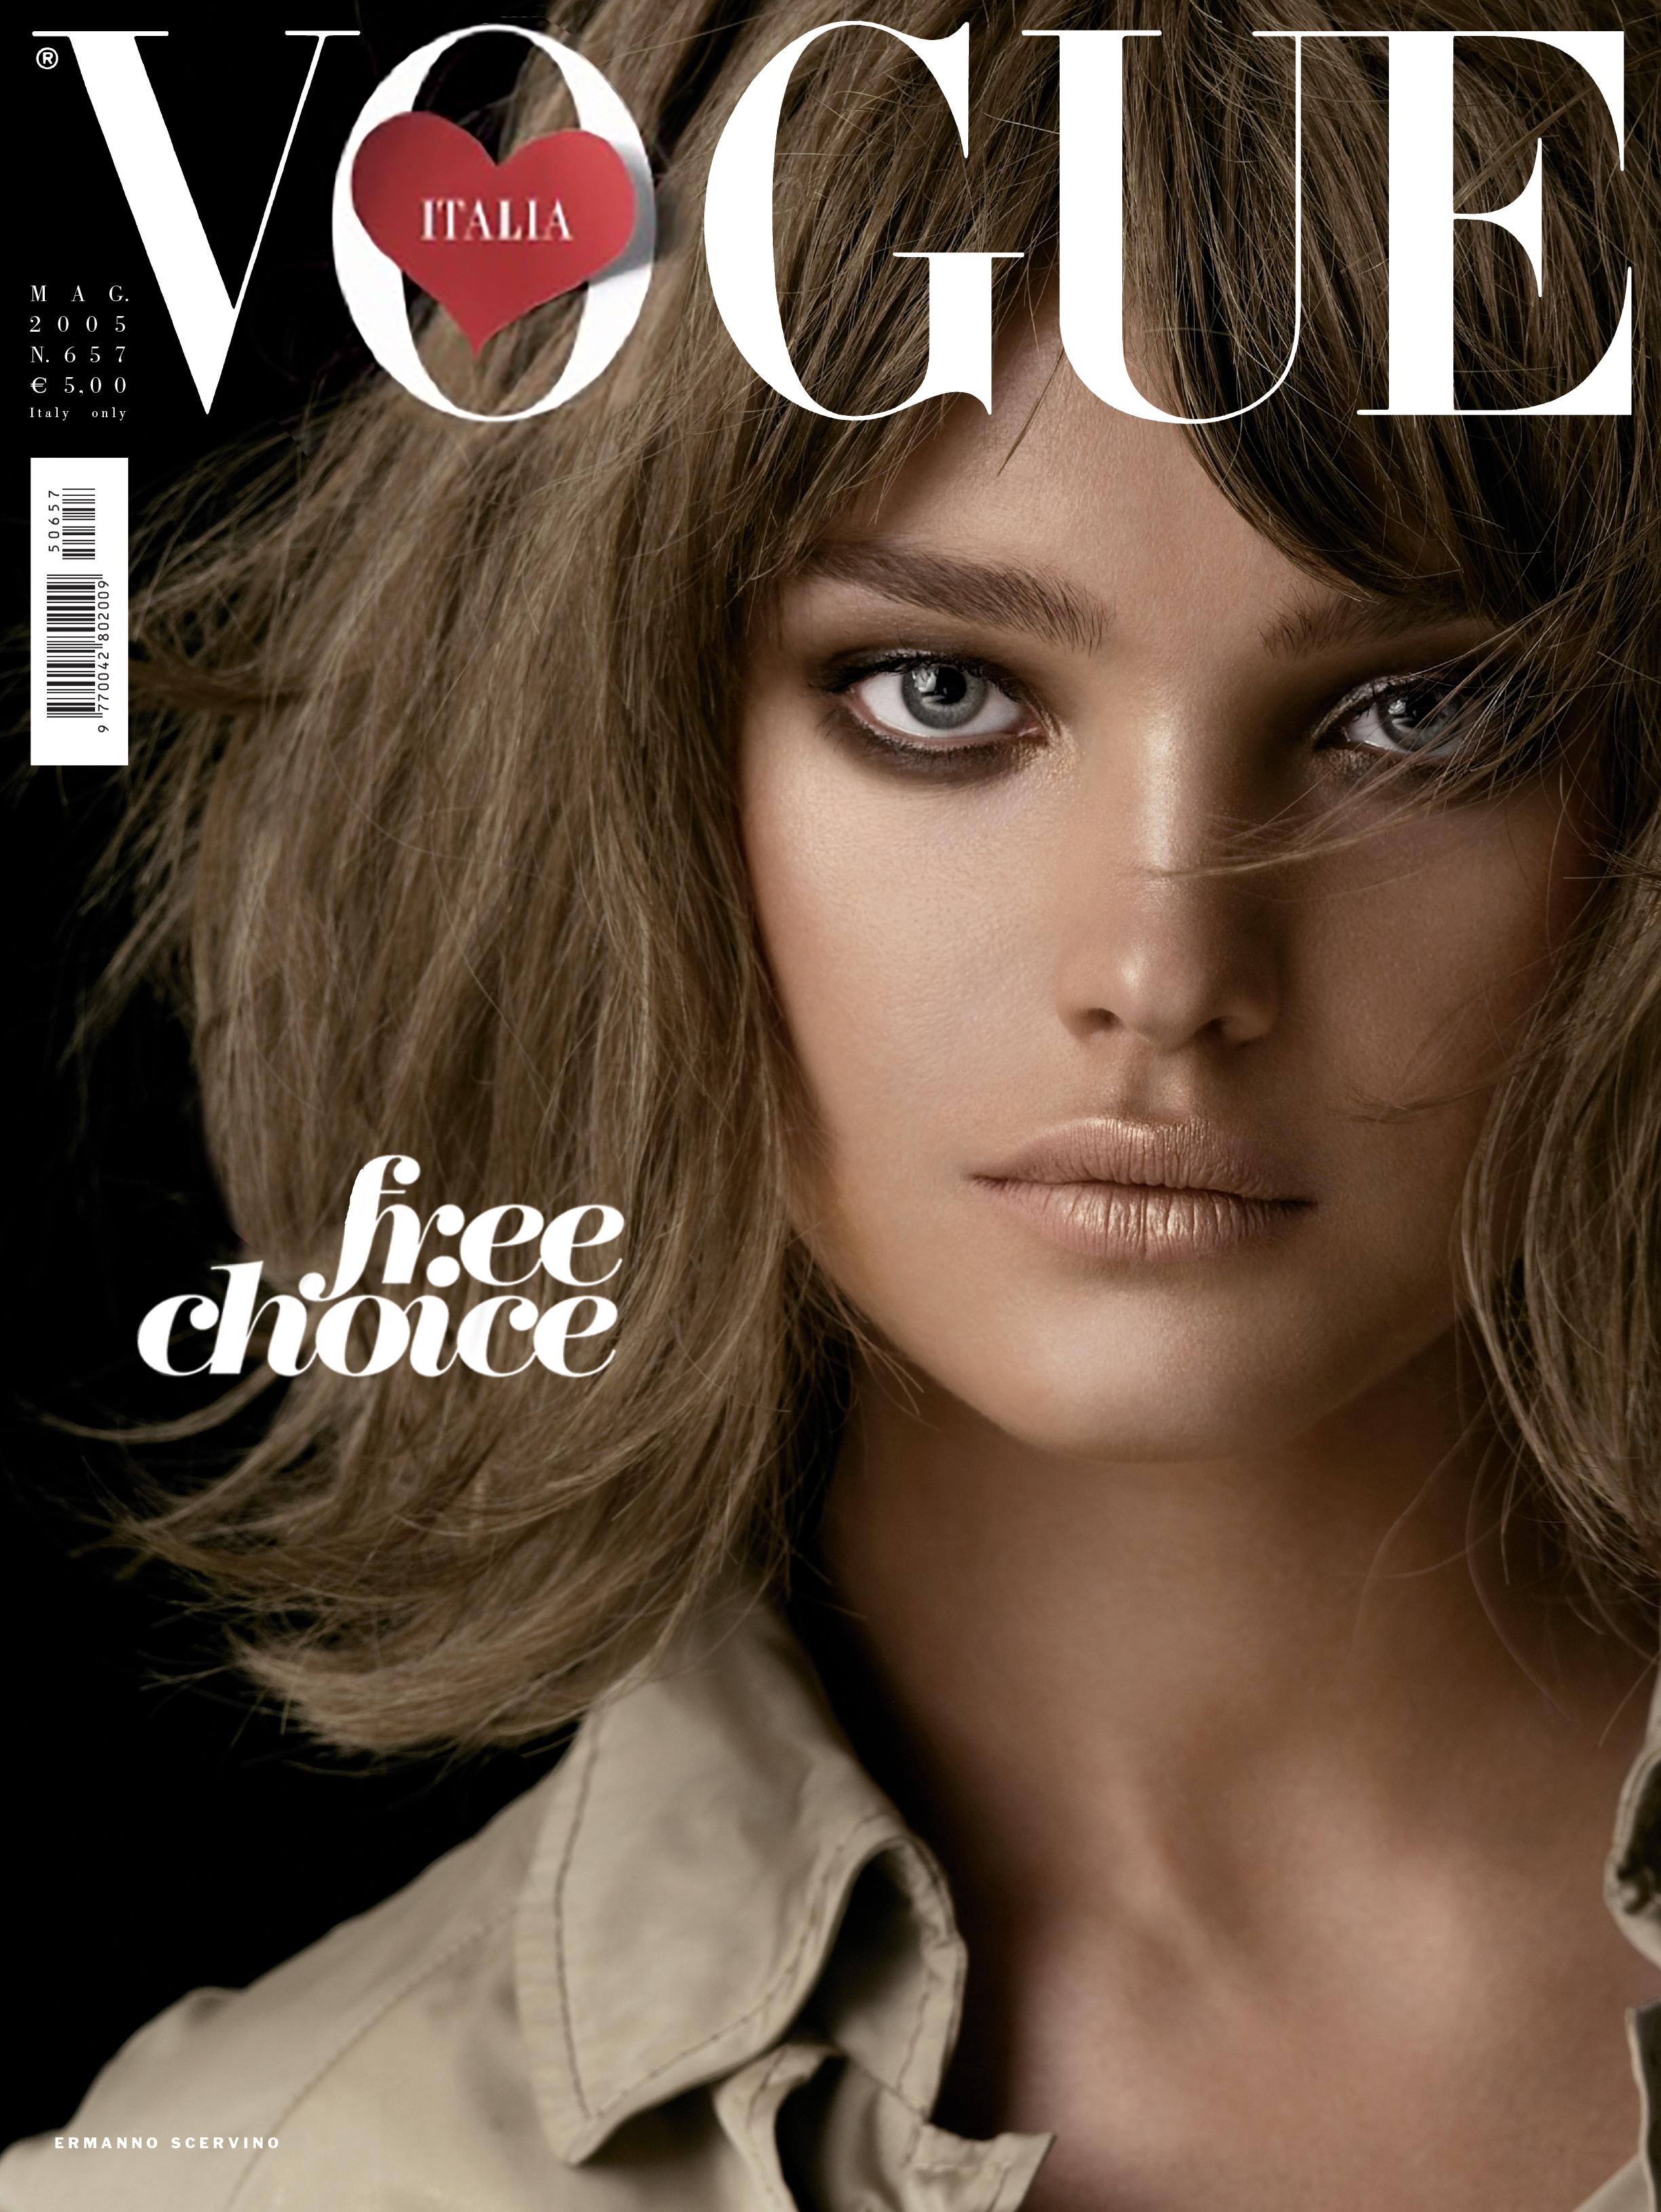 Italian Vogue cover design